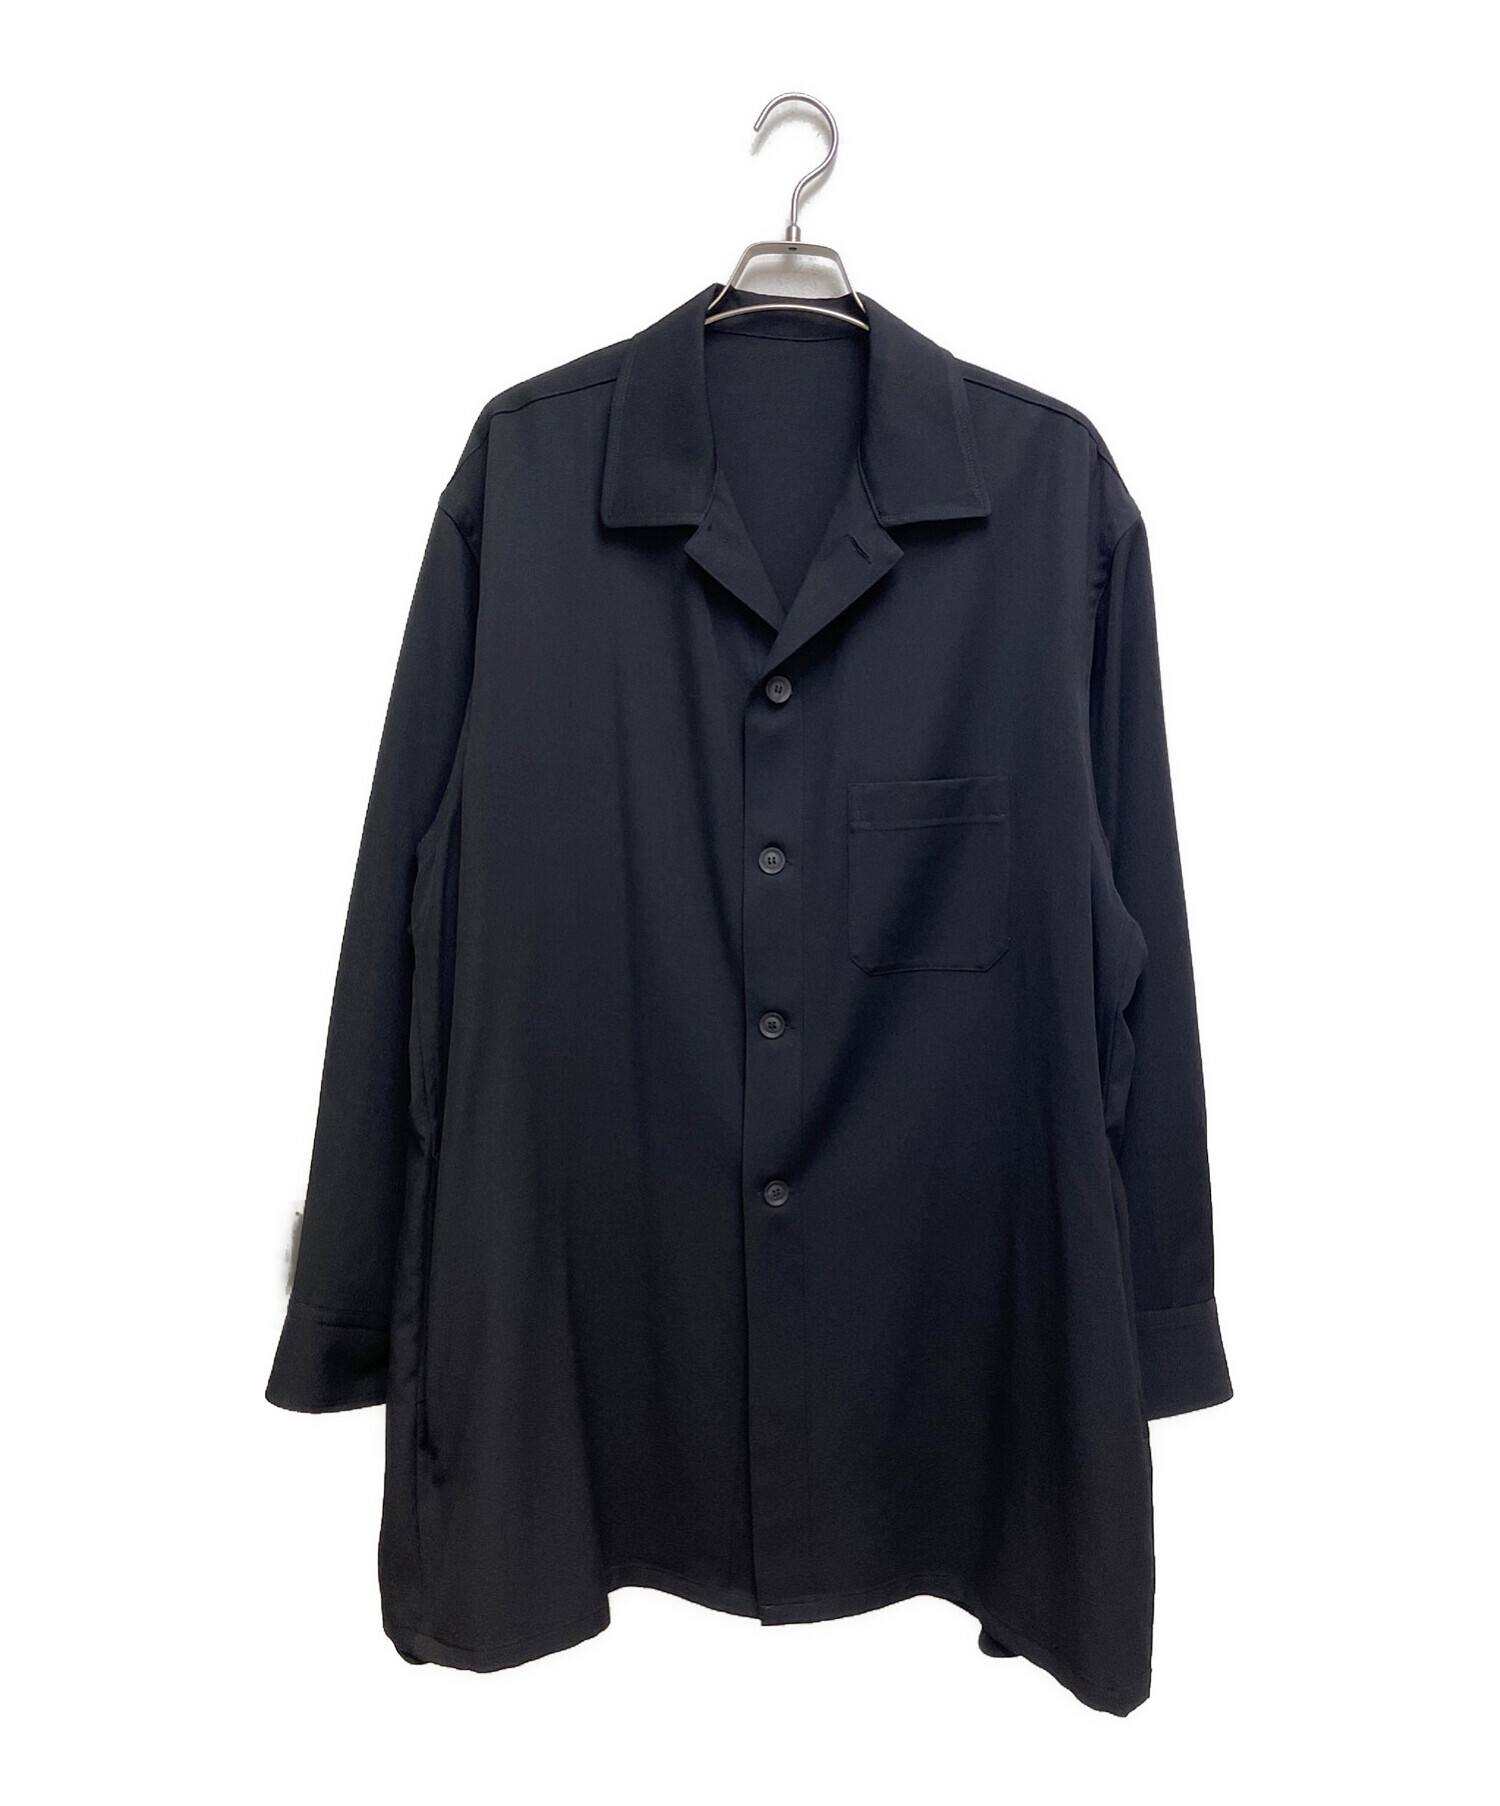 Yohji Yamamoto pour homme (ヨウジヤマモト プールオム) 16AW ウールギャバジンシャツ ブラック サイズ:1